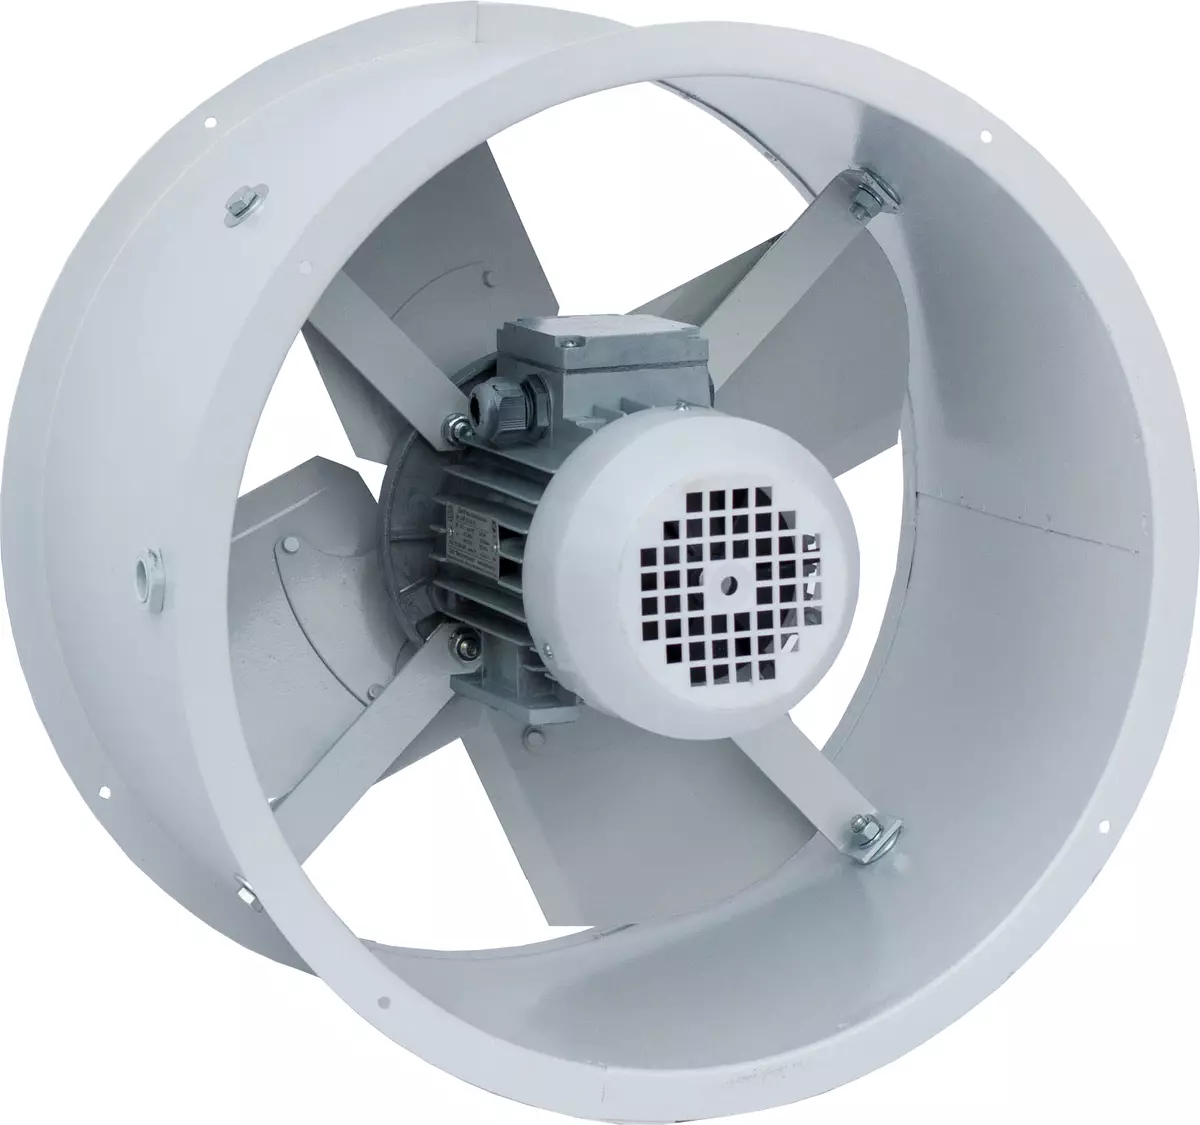 Ventilator u toalet: ispušni ventilator s provjerom ventila i tihi stropni ventilatori za kupaonice, ostale opcije. Što je bolje odabrati model? 10469_25